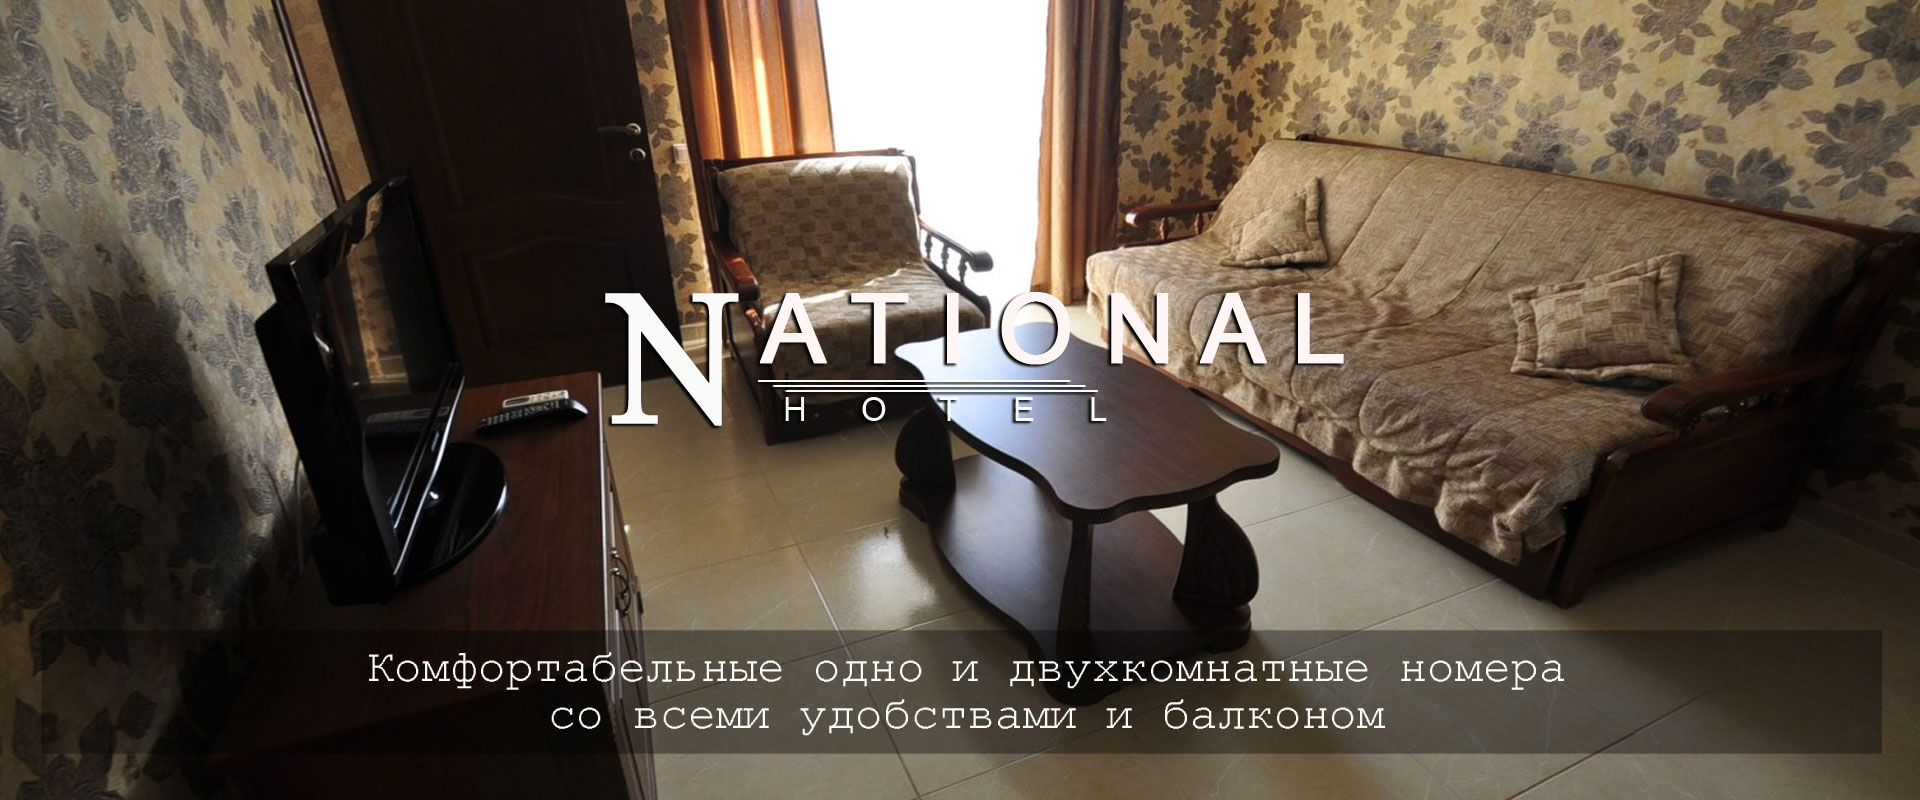 Отель National, комфортабельный отдых в центре Витязево, Анапа